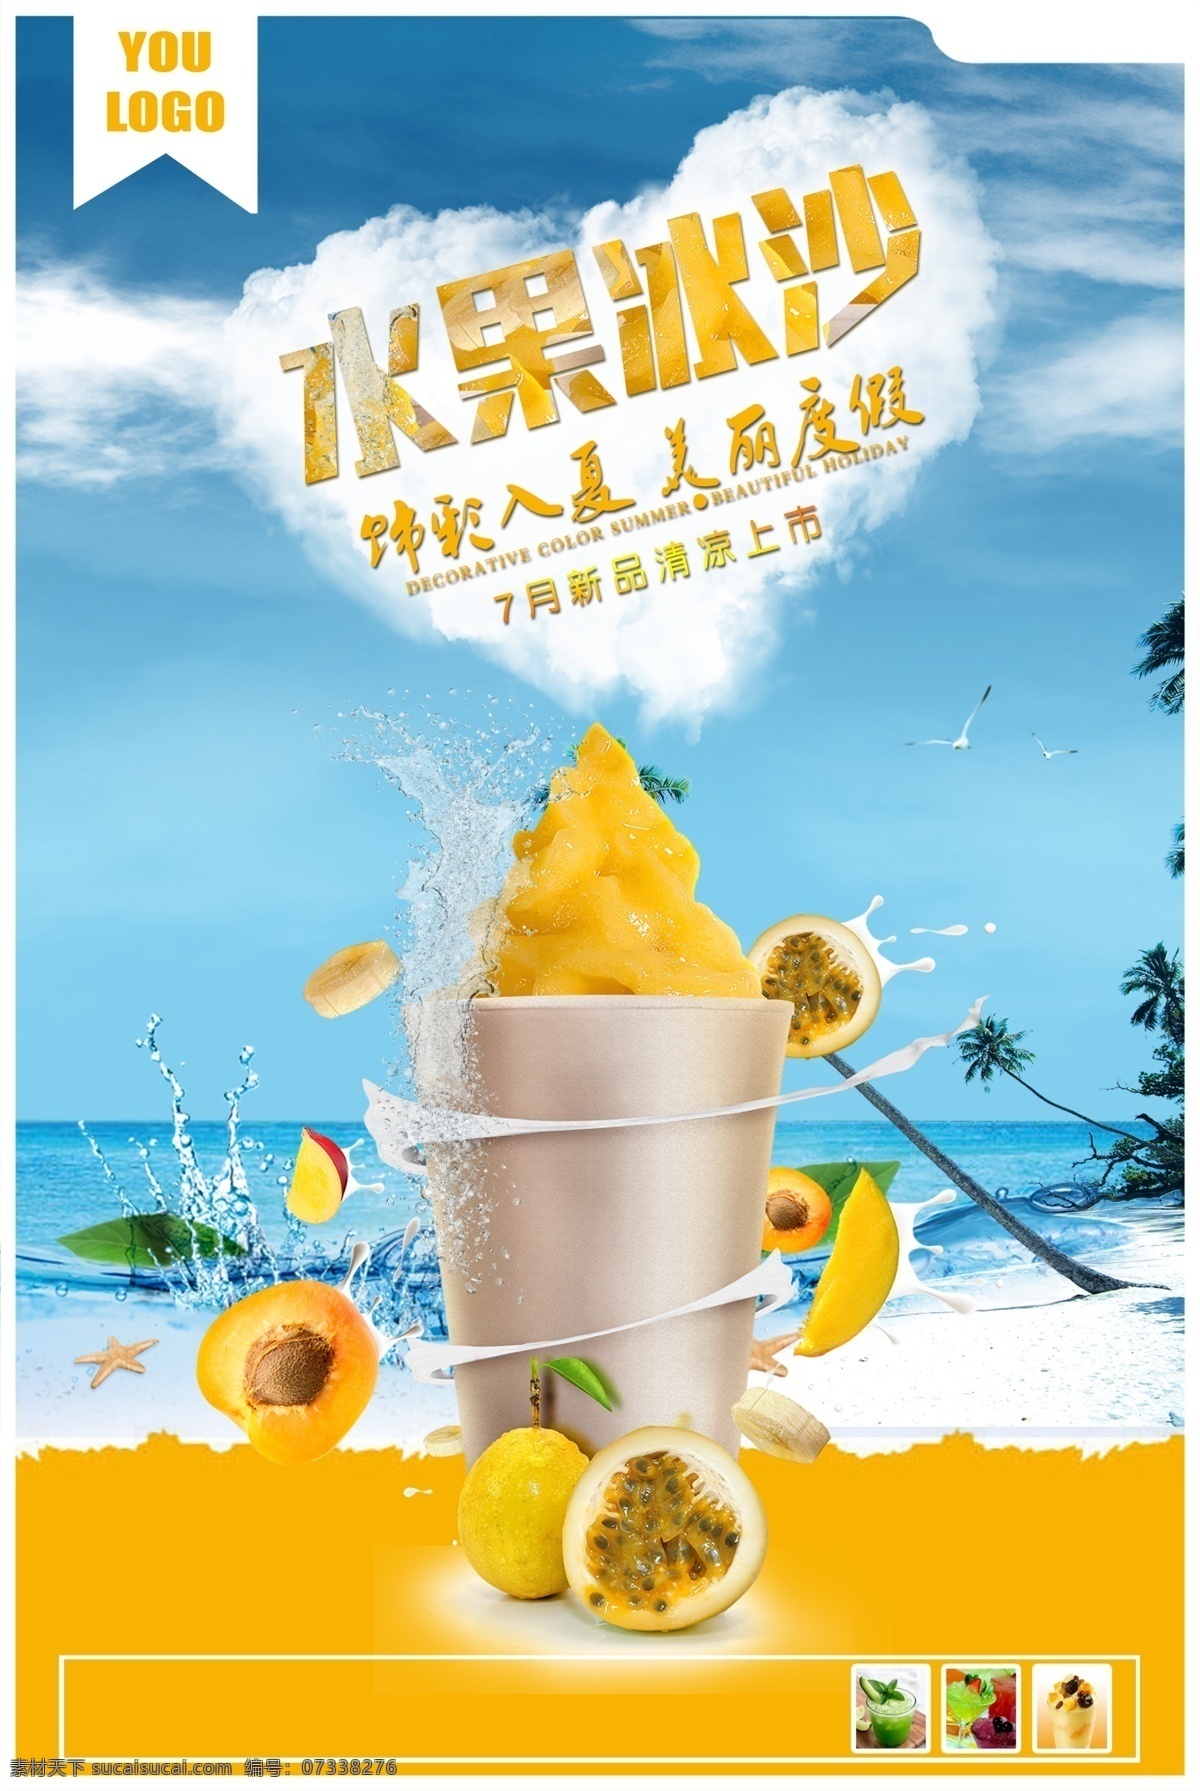 水果店 芒果 果汁 广告 海报 沙拉 饮料 简约 美食 水果